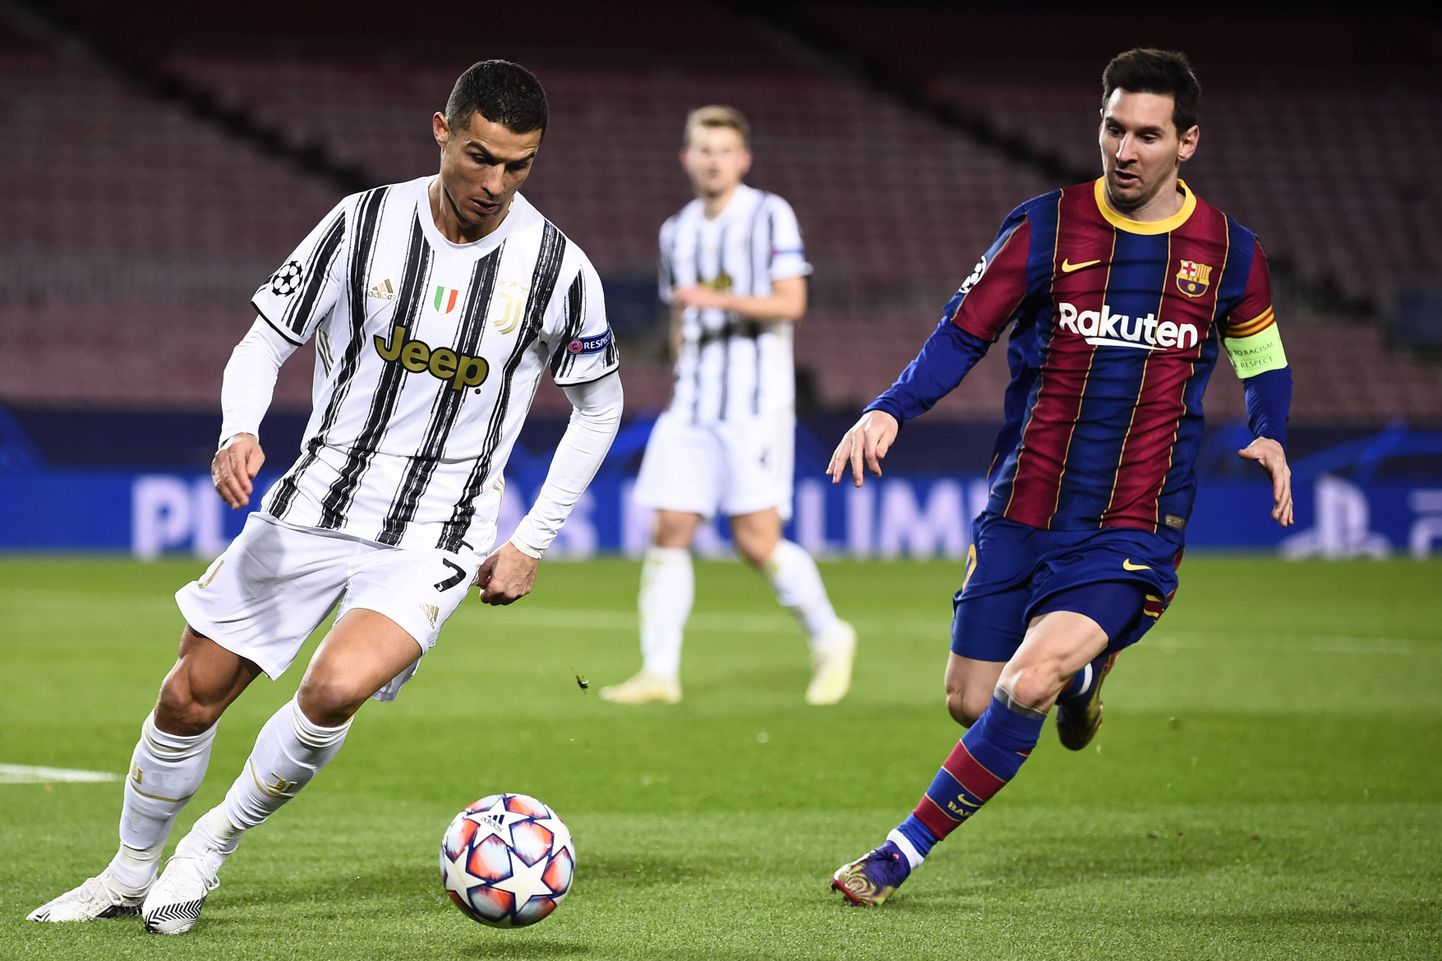 Kui veel möödunud hooajal kandsid Cristiano Ronaldo (vasakul) ja Lionel Messi (paremal) vastavalt Torino Juventuse ja FC Barcelona mängusärke, siis tänavu jätkavad nad mõlemad teiste klubide ridades.